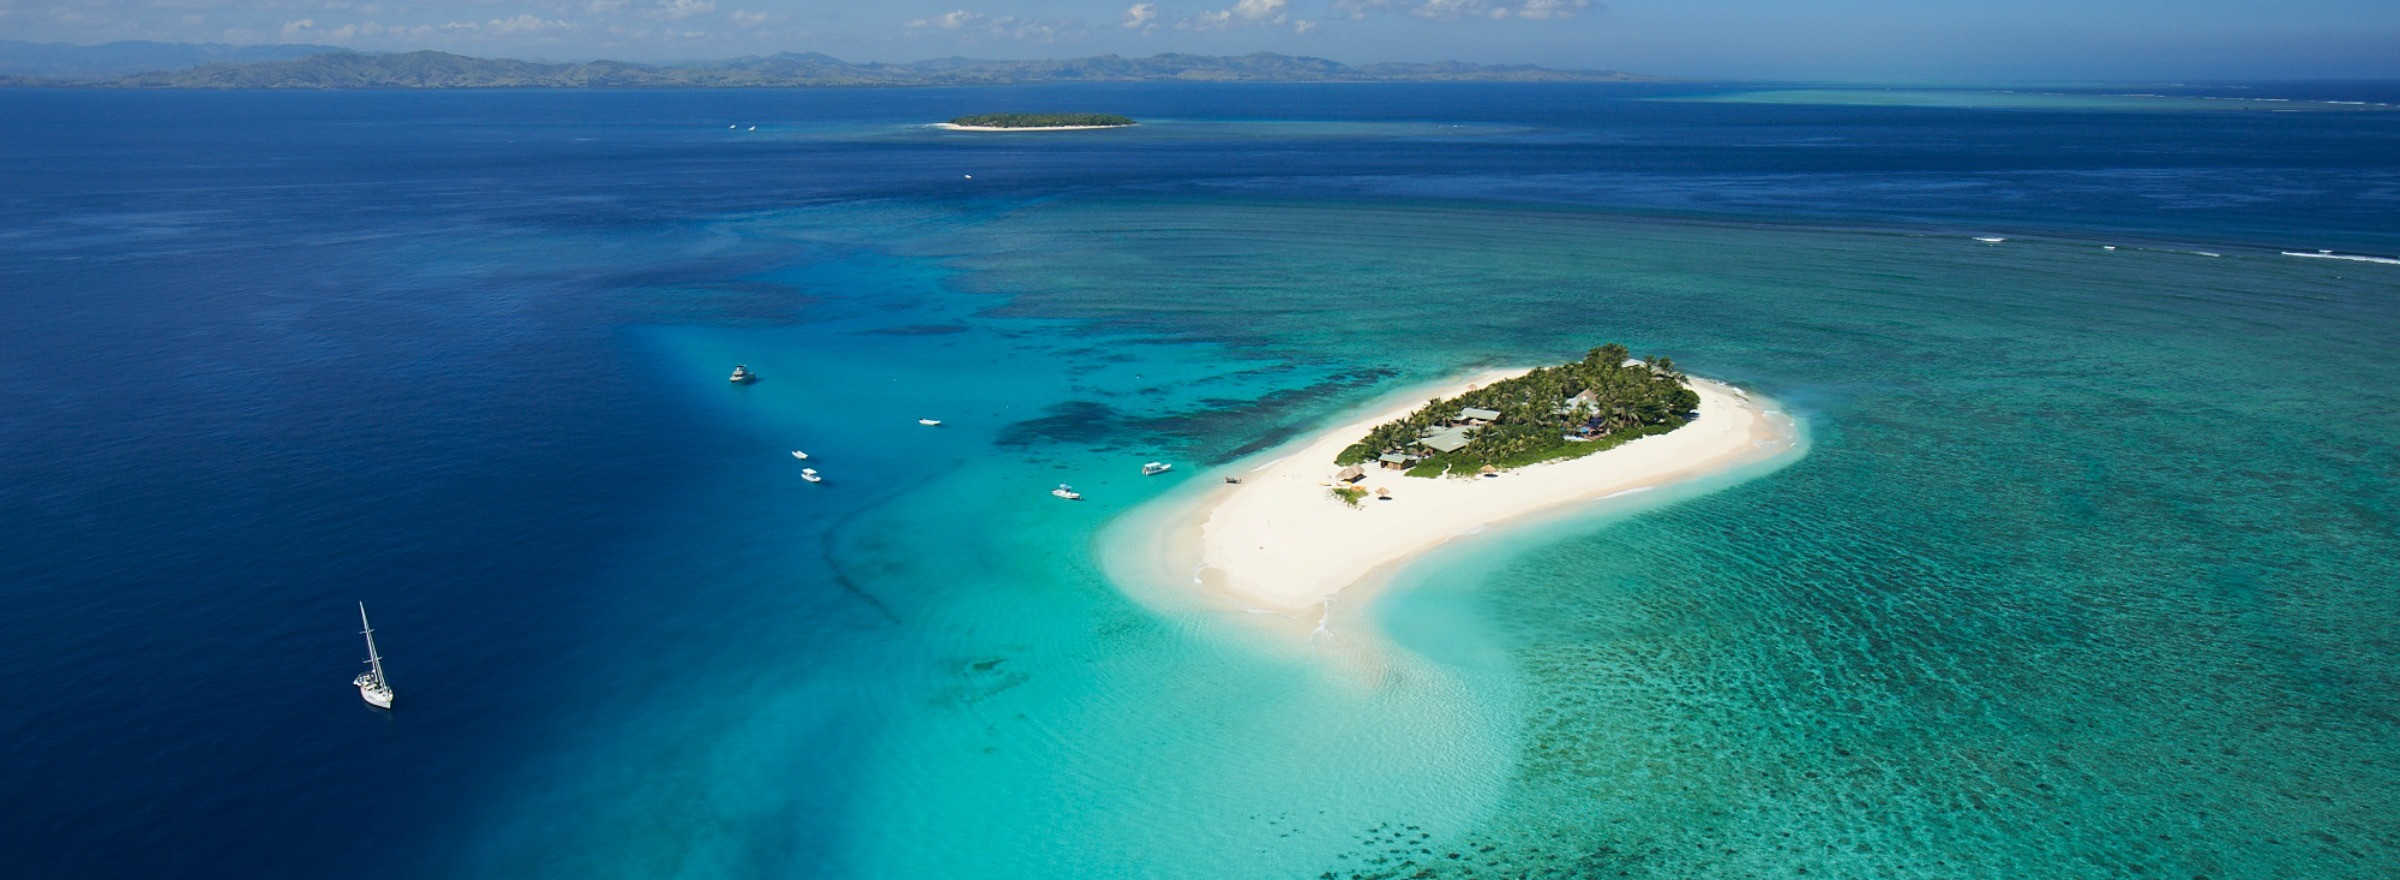 Reasons why Fiji is paradise